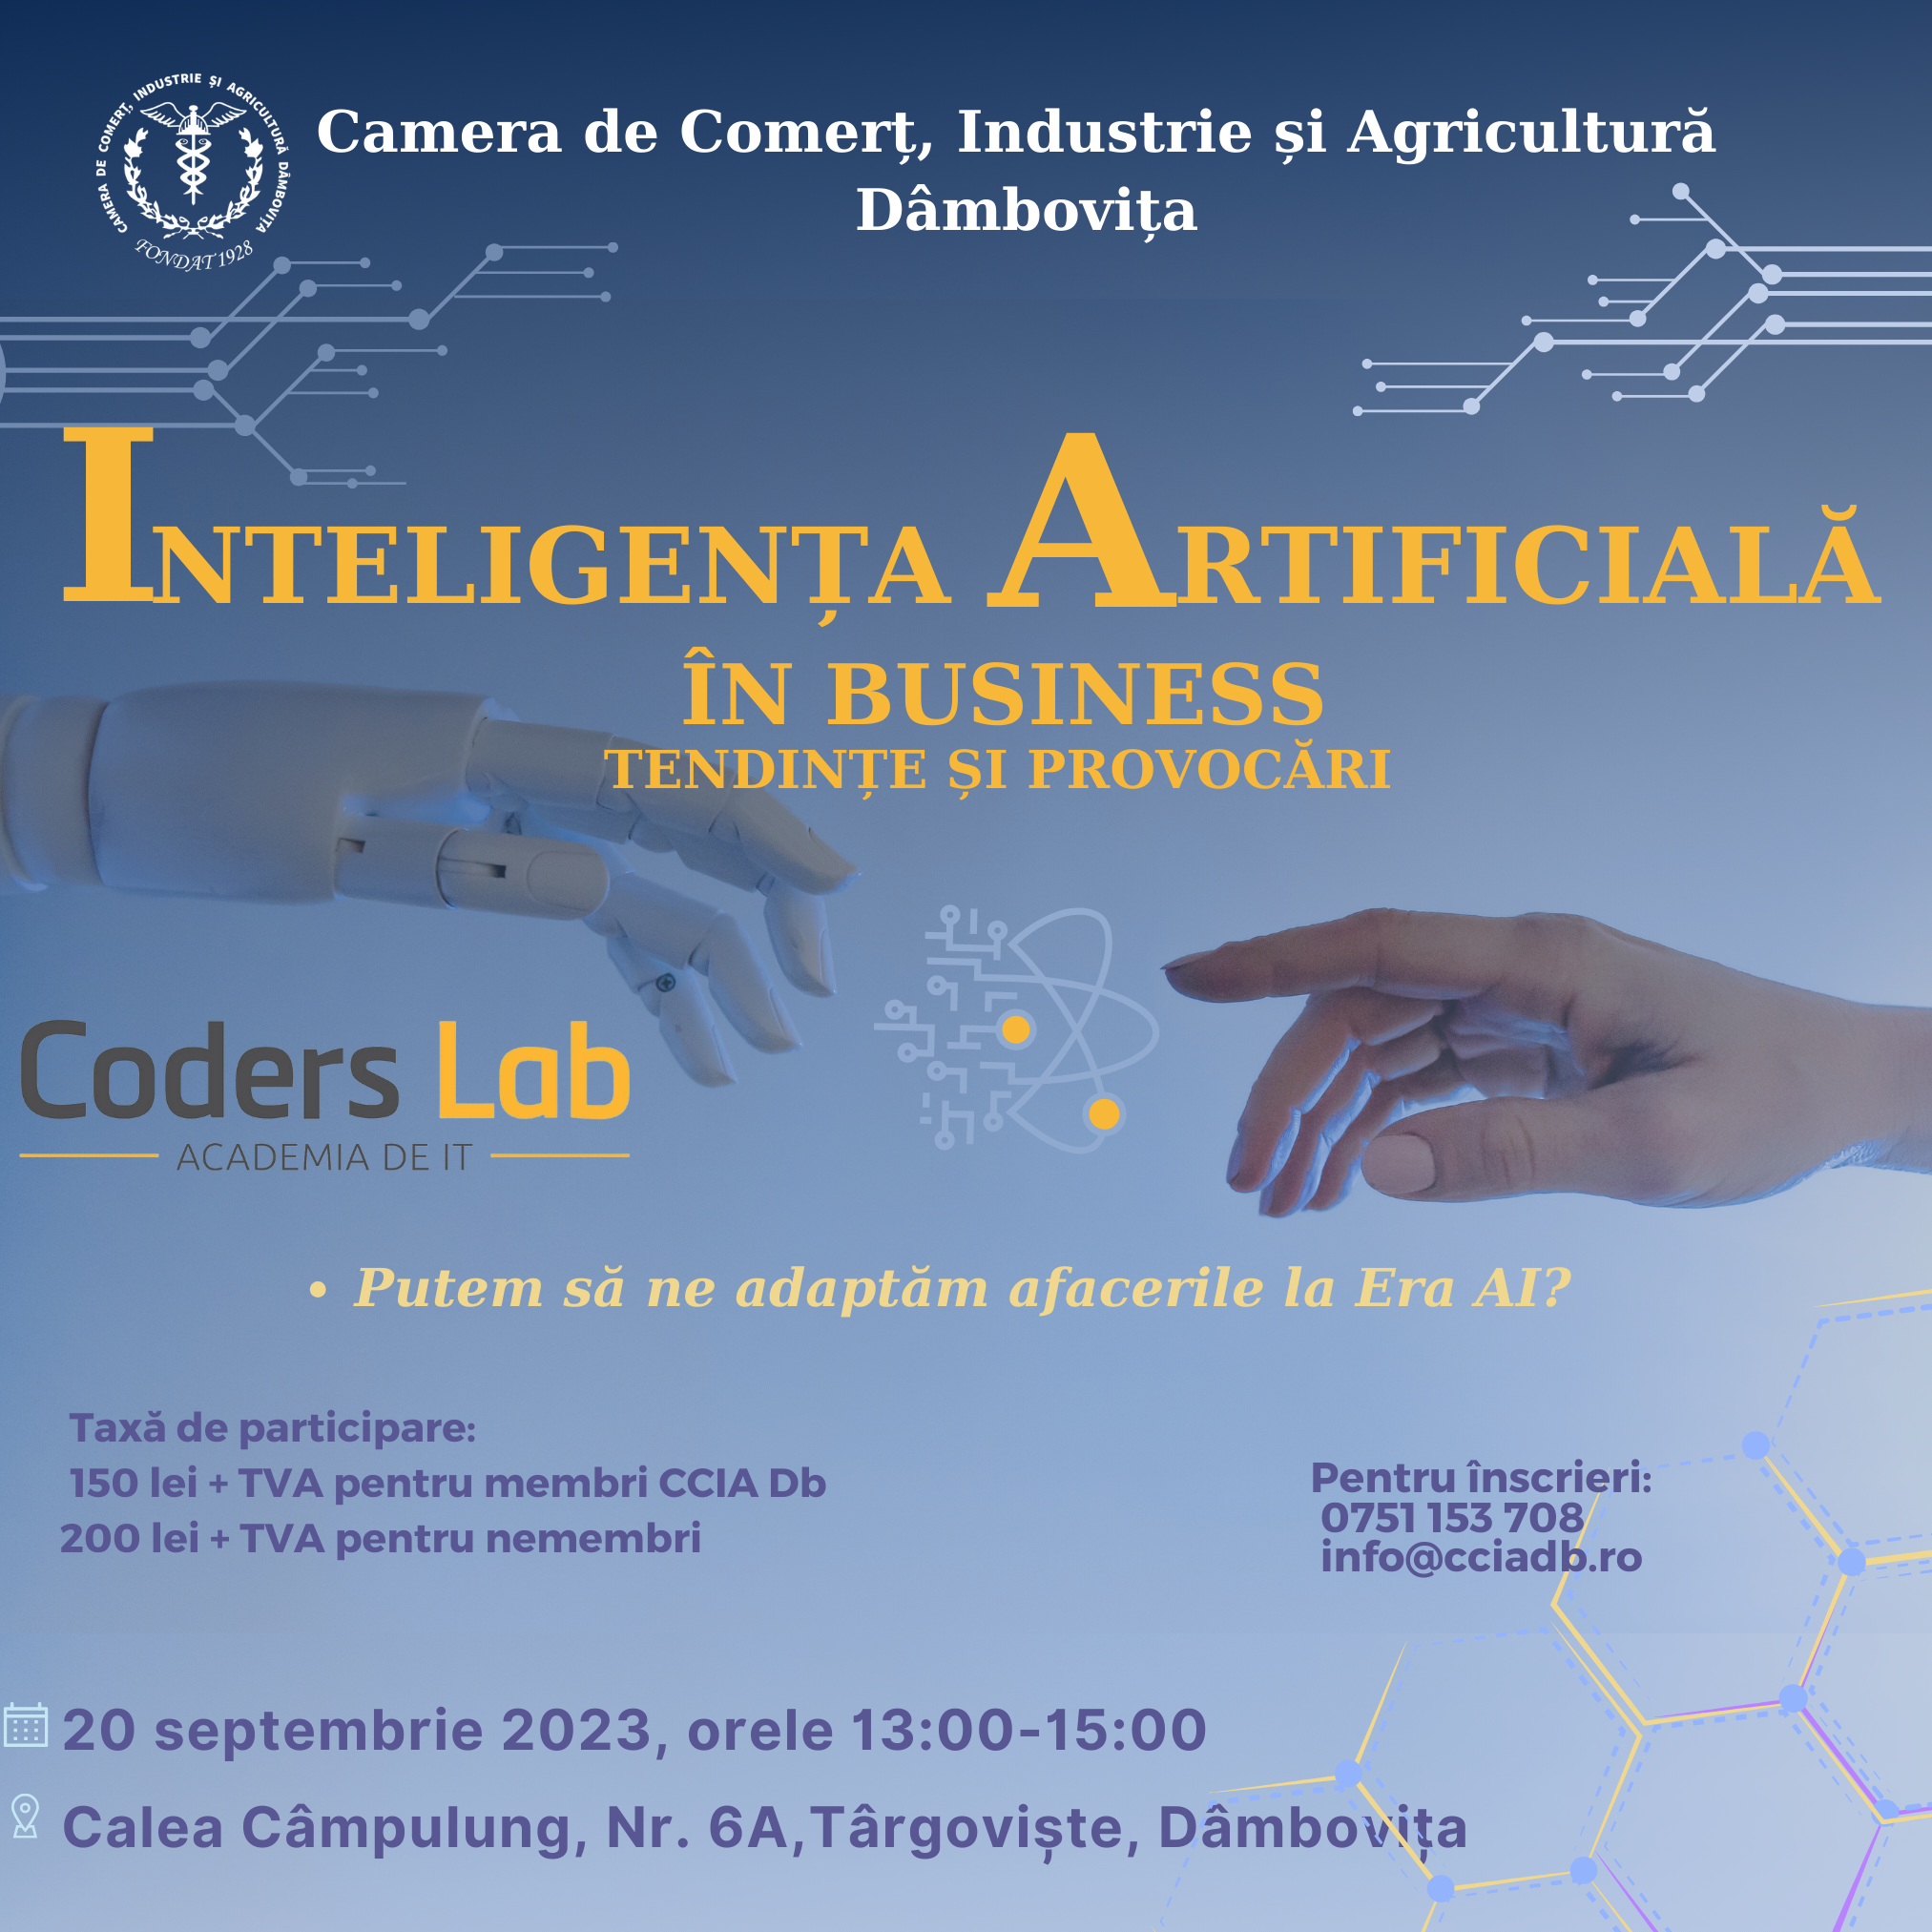 Inteligența Artificială în Business: Tendințe și provocări, Conferință organizată de Camera de Comerț Dâmbovița și Coders Lab -Academia de IT. Termenul limită pentru înscrieri este 15 septembrie.